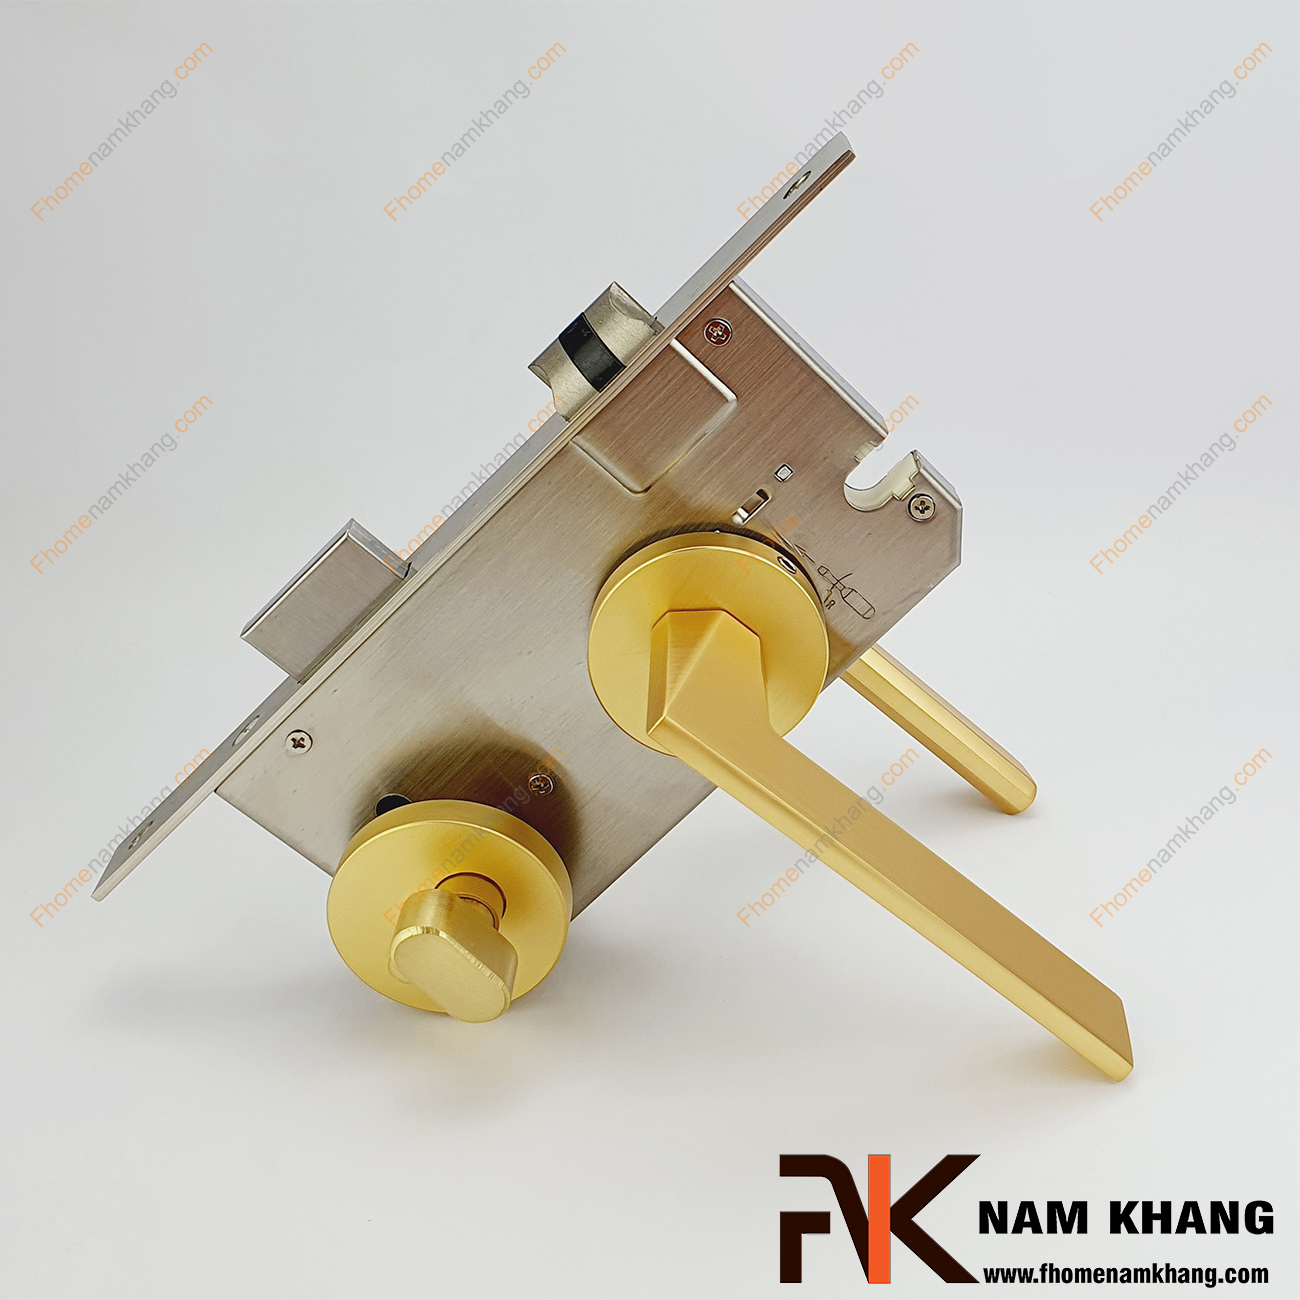 Khóa cửa phân thể dạng ốp tròn màu vàng mờ NK570-VM có thiết kế phần ốp khóa và tay gạt riêng biệt, khá nhỏ gọn và tạo được sự nổi bật độc đáo của một dòng khóa cửa.